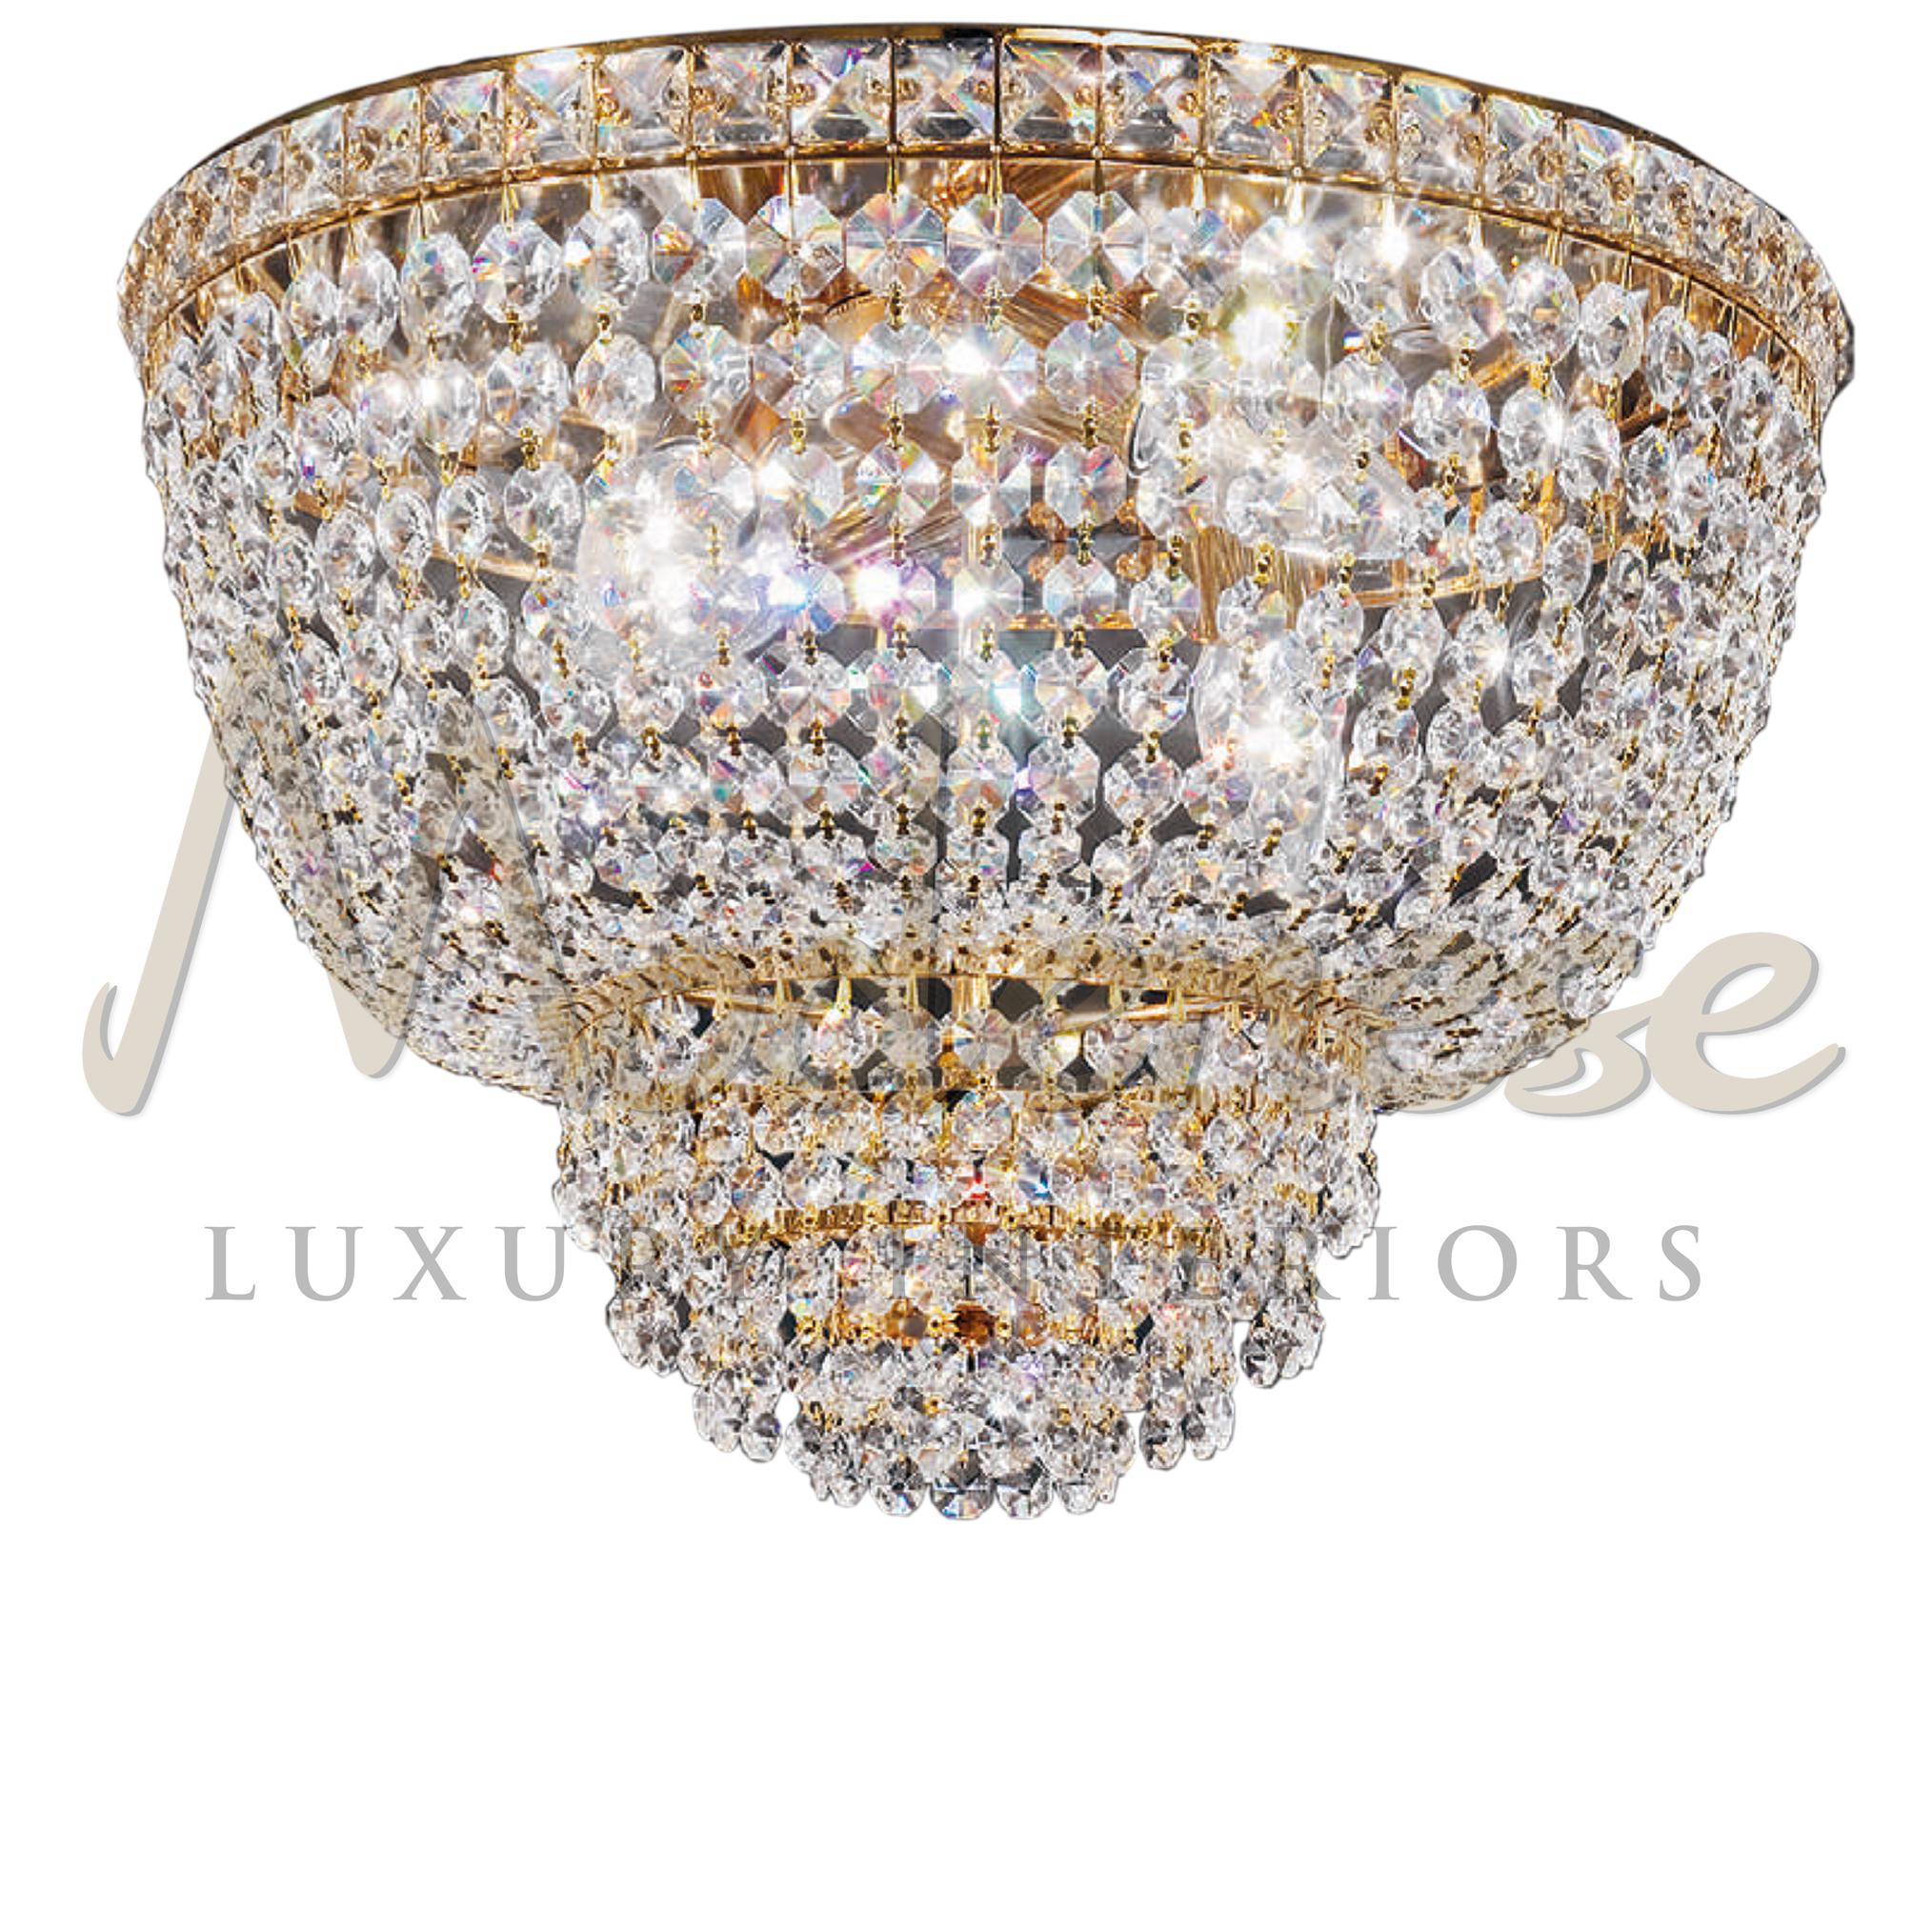 Die Modenese Gastone Luxury Interiors sind Kunstwerke, die dank ihrer 24-karätigen Vergoldung und der Kristalle jedem Raum sofort Eleganz und Luxus verleihen. Dieses Modell benötigt 4 einzelne E14-Schraubglühbirnen (max. 40Watt).
 